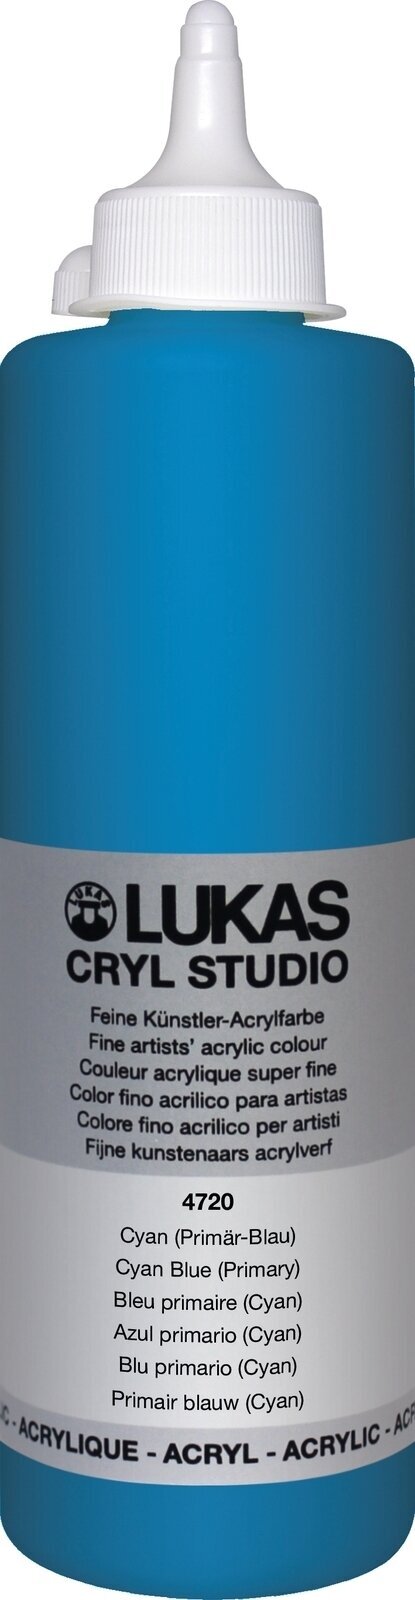 Peinture acrylique Lukas Cryl Studio Acrylic Paint Plastic Bottle Peinture acrylique Cyan Blue (Primary) 500 ml 1 pc